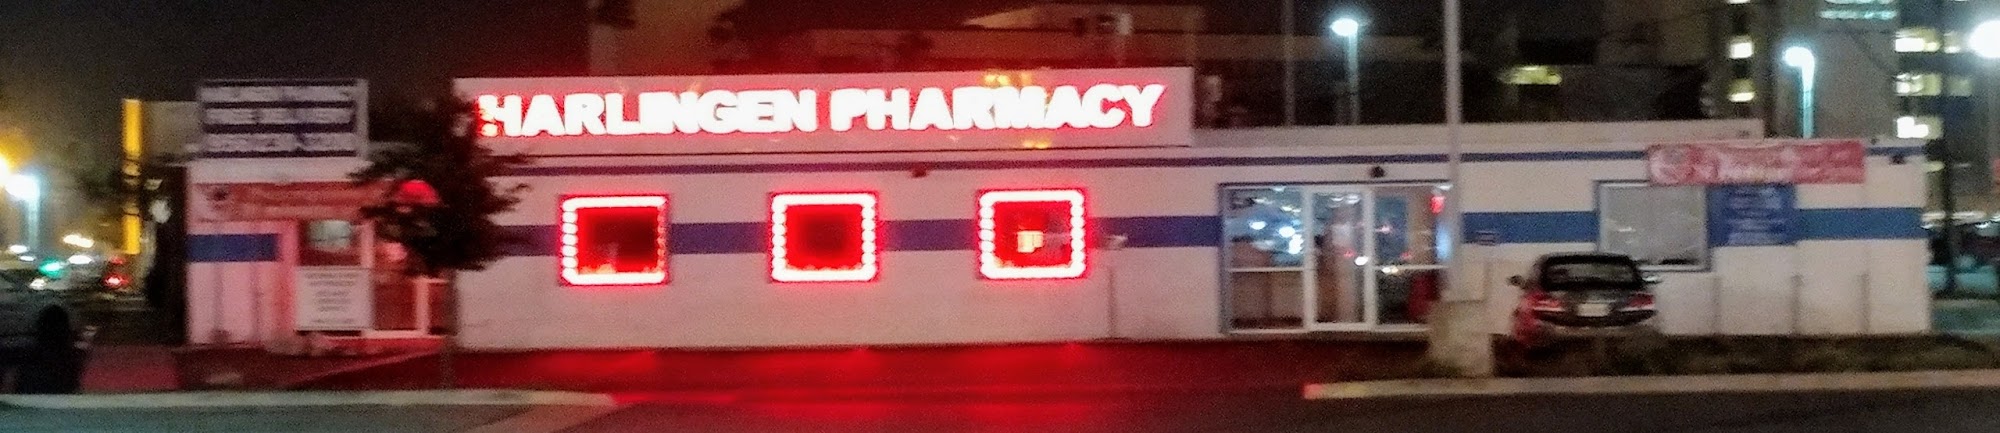 Harlingen Pharmacy